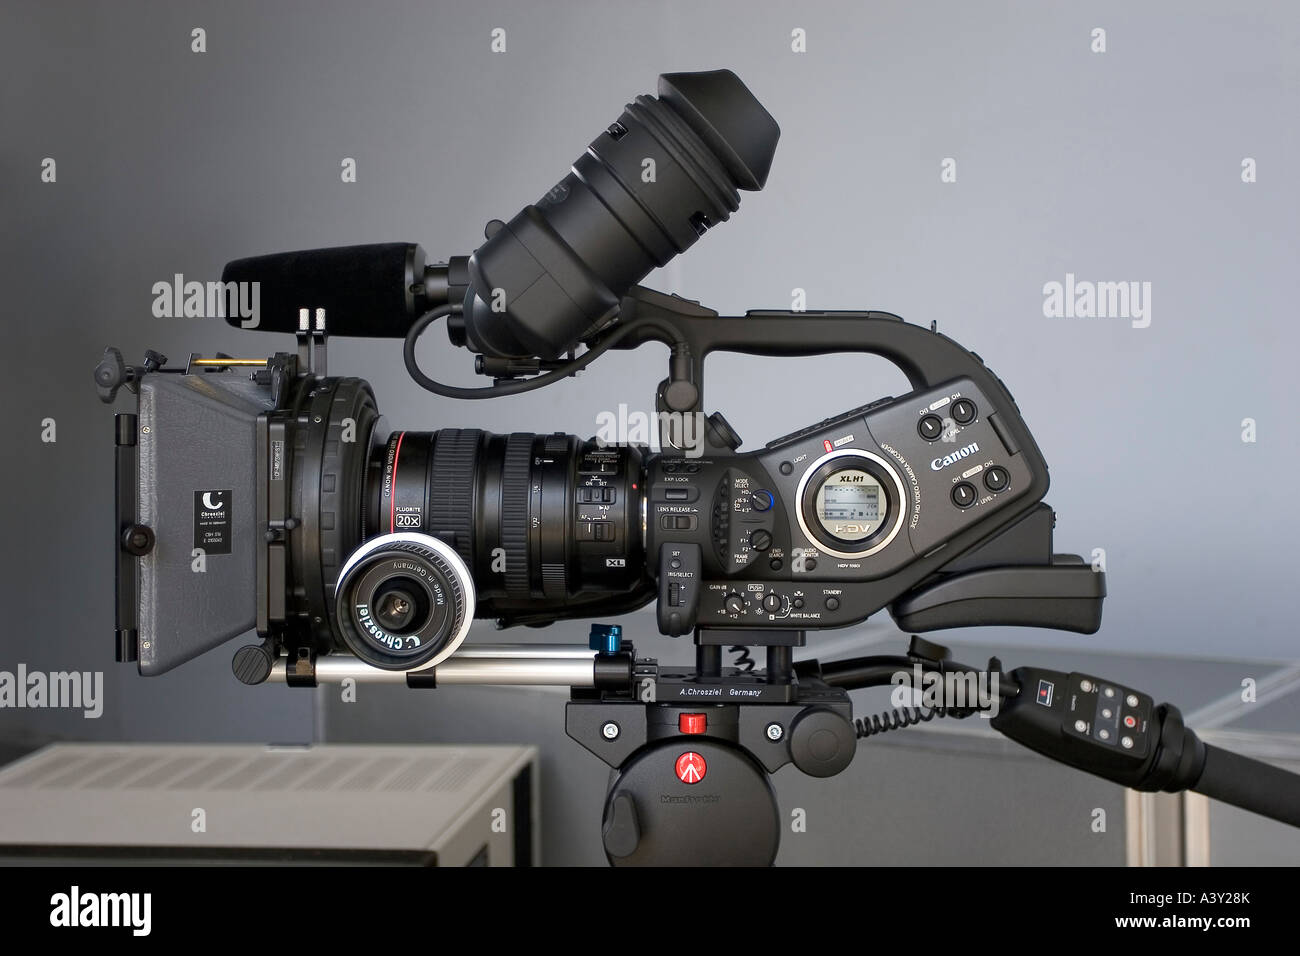 de vídeo de alta definición profesional en un ajuste de Fotografía stock Alamy